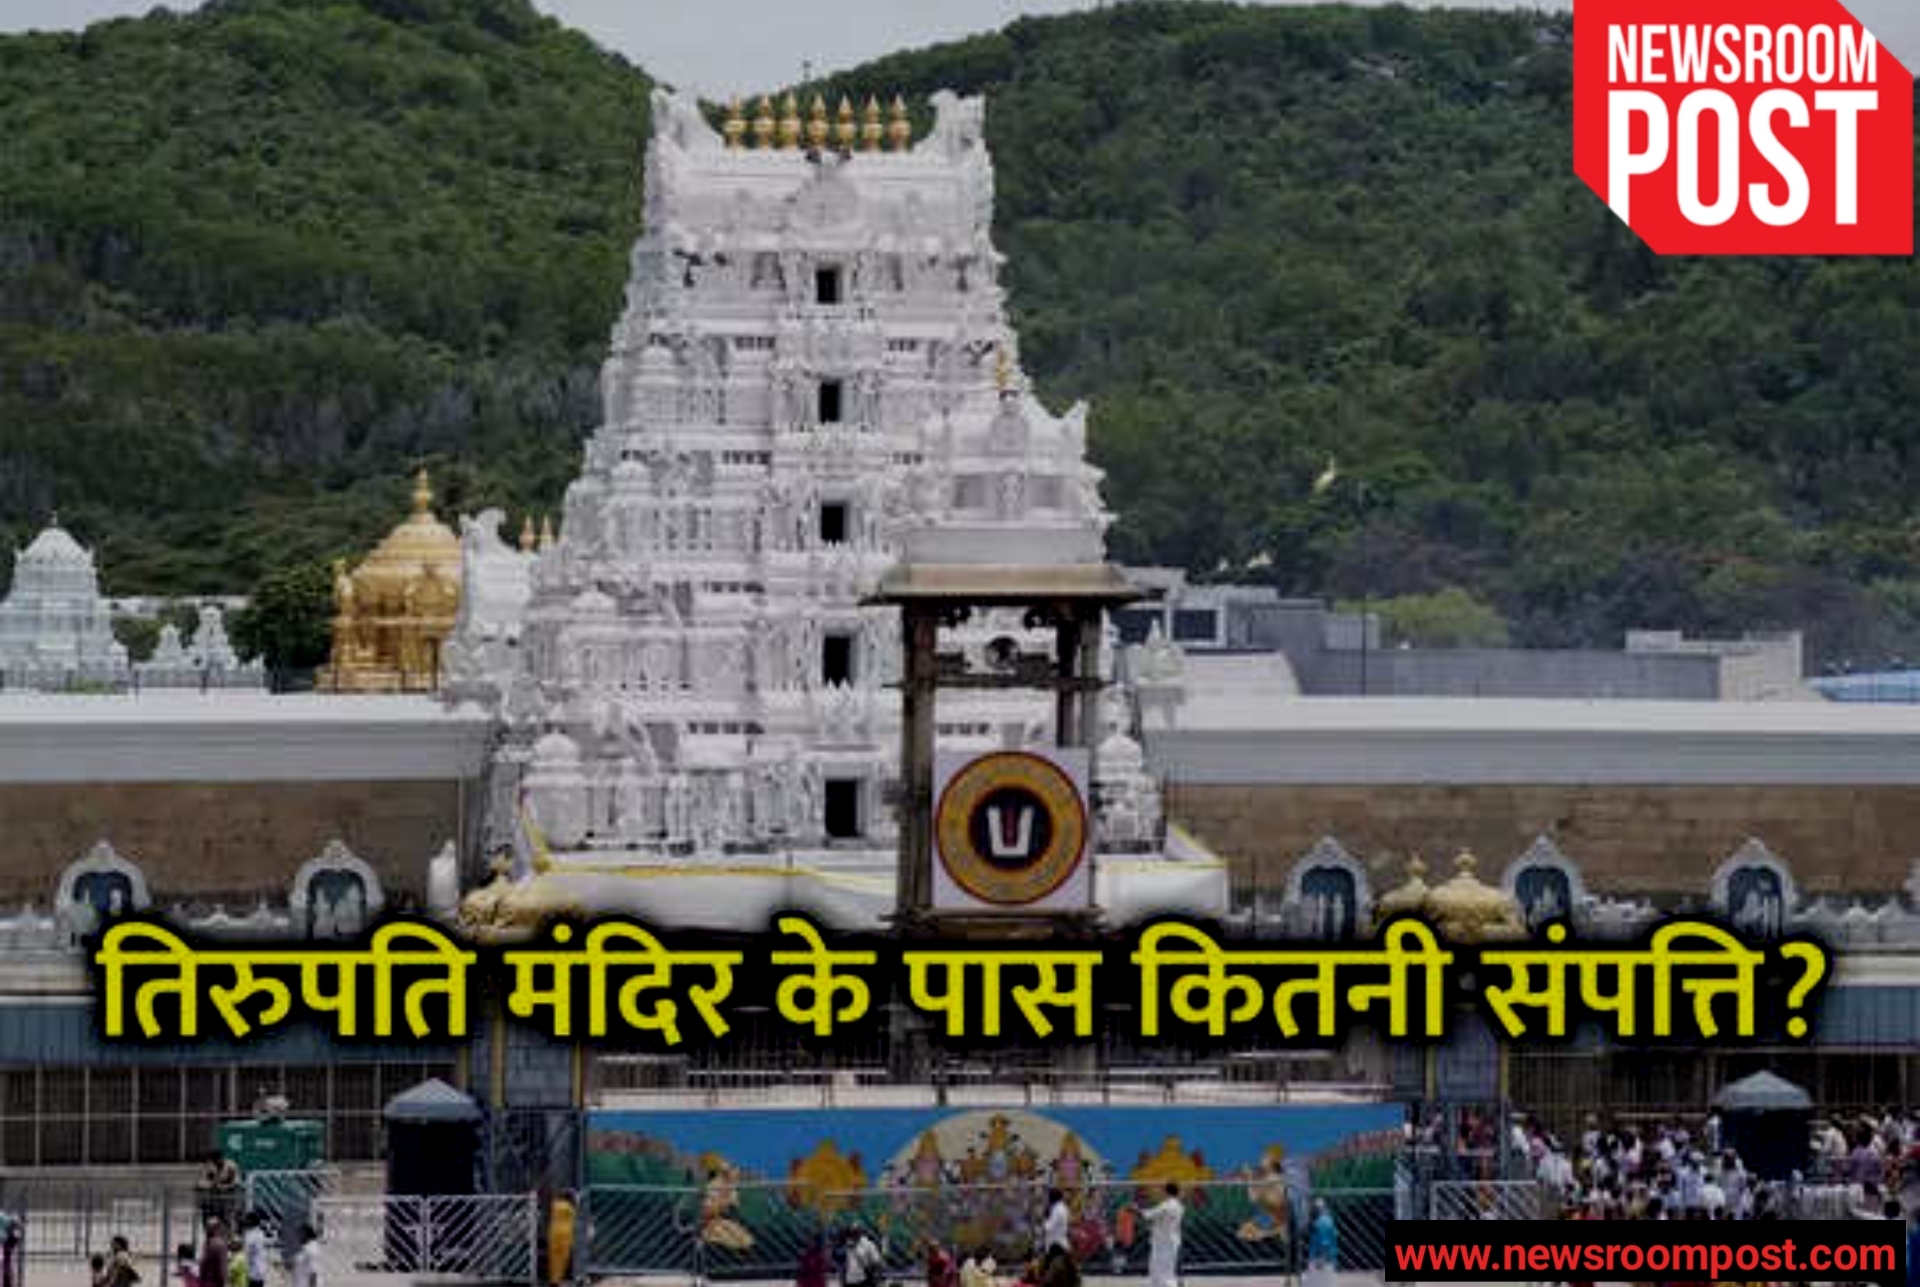 Tirupati Tirumala Temple : दुनिया के सबसे अमीर मंदिर तिरुमाला तिरुपति देवस्थानम के पास है 10.3 टन सोना, 16 हज़ार करोड़ बैंक में जमा